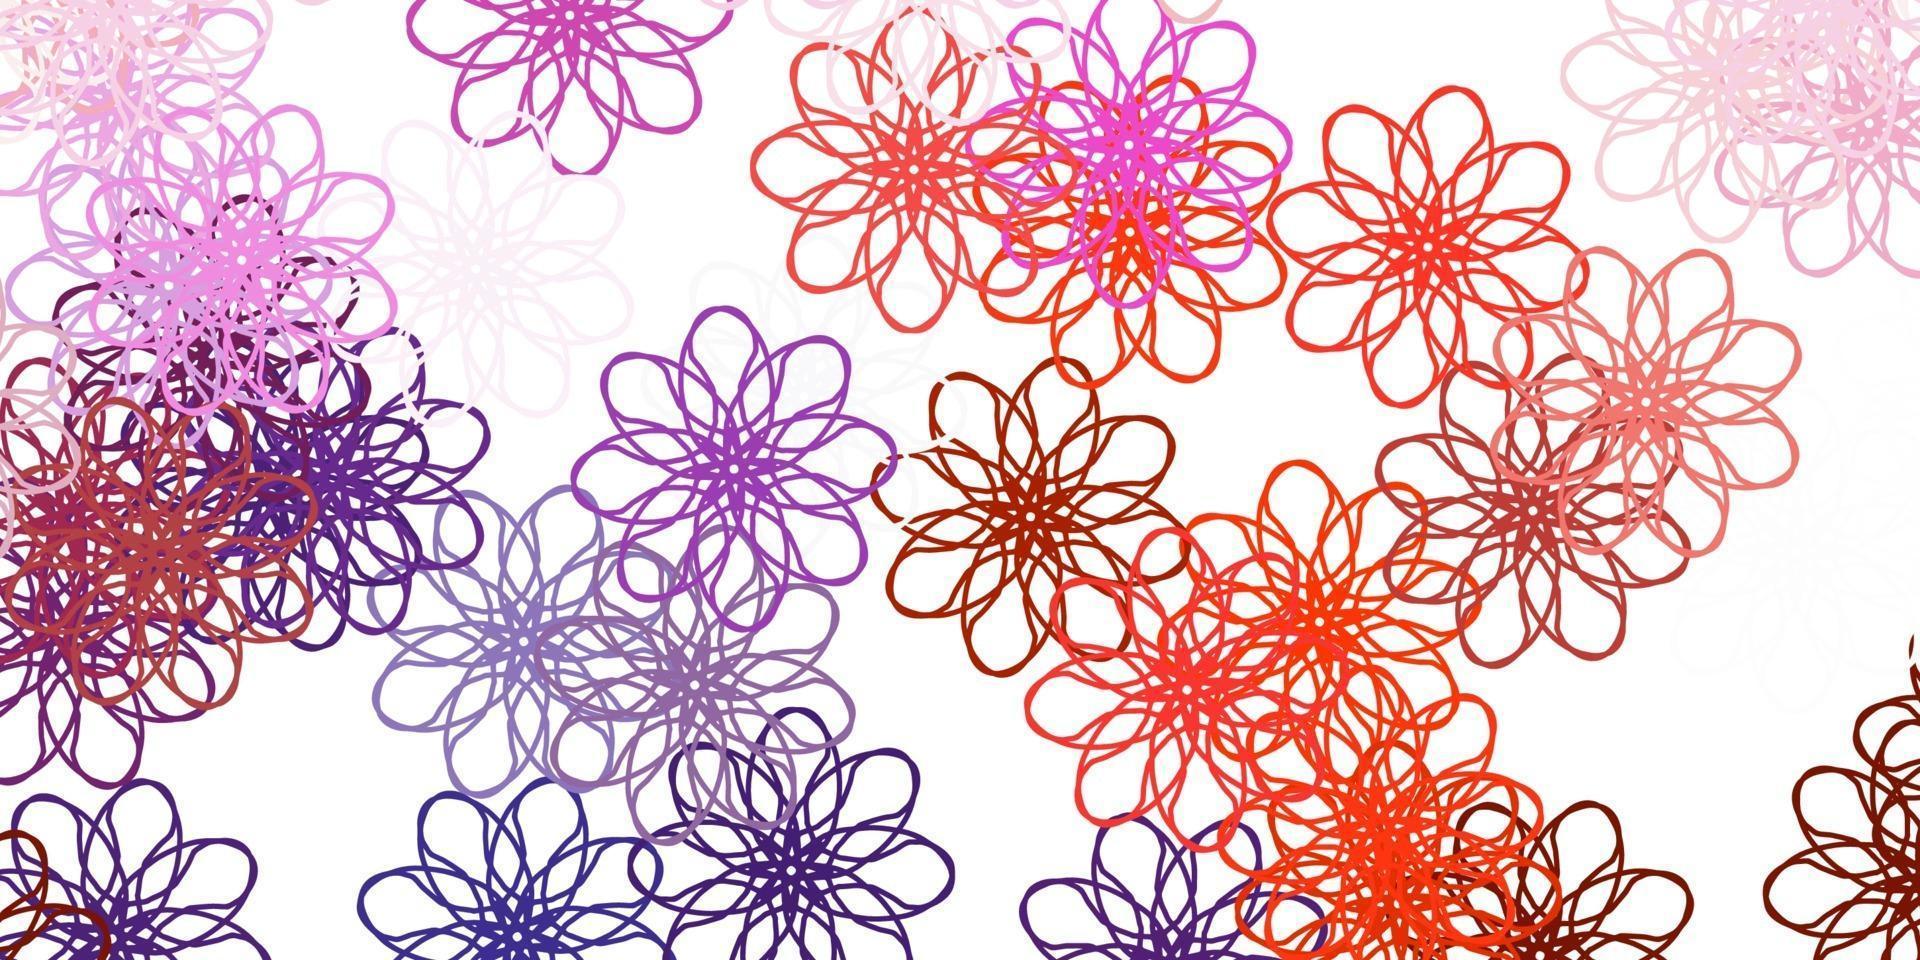 lichtroze, rode vectorkrabbelachtergrond met bloemen. vector